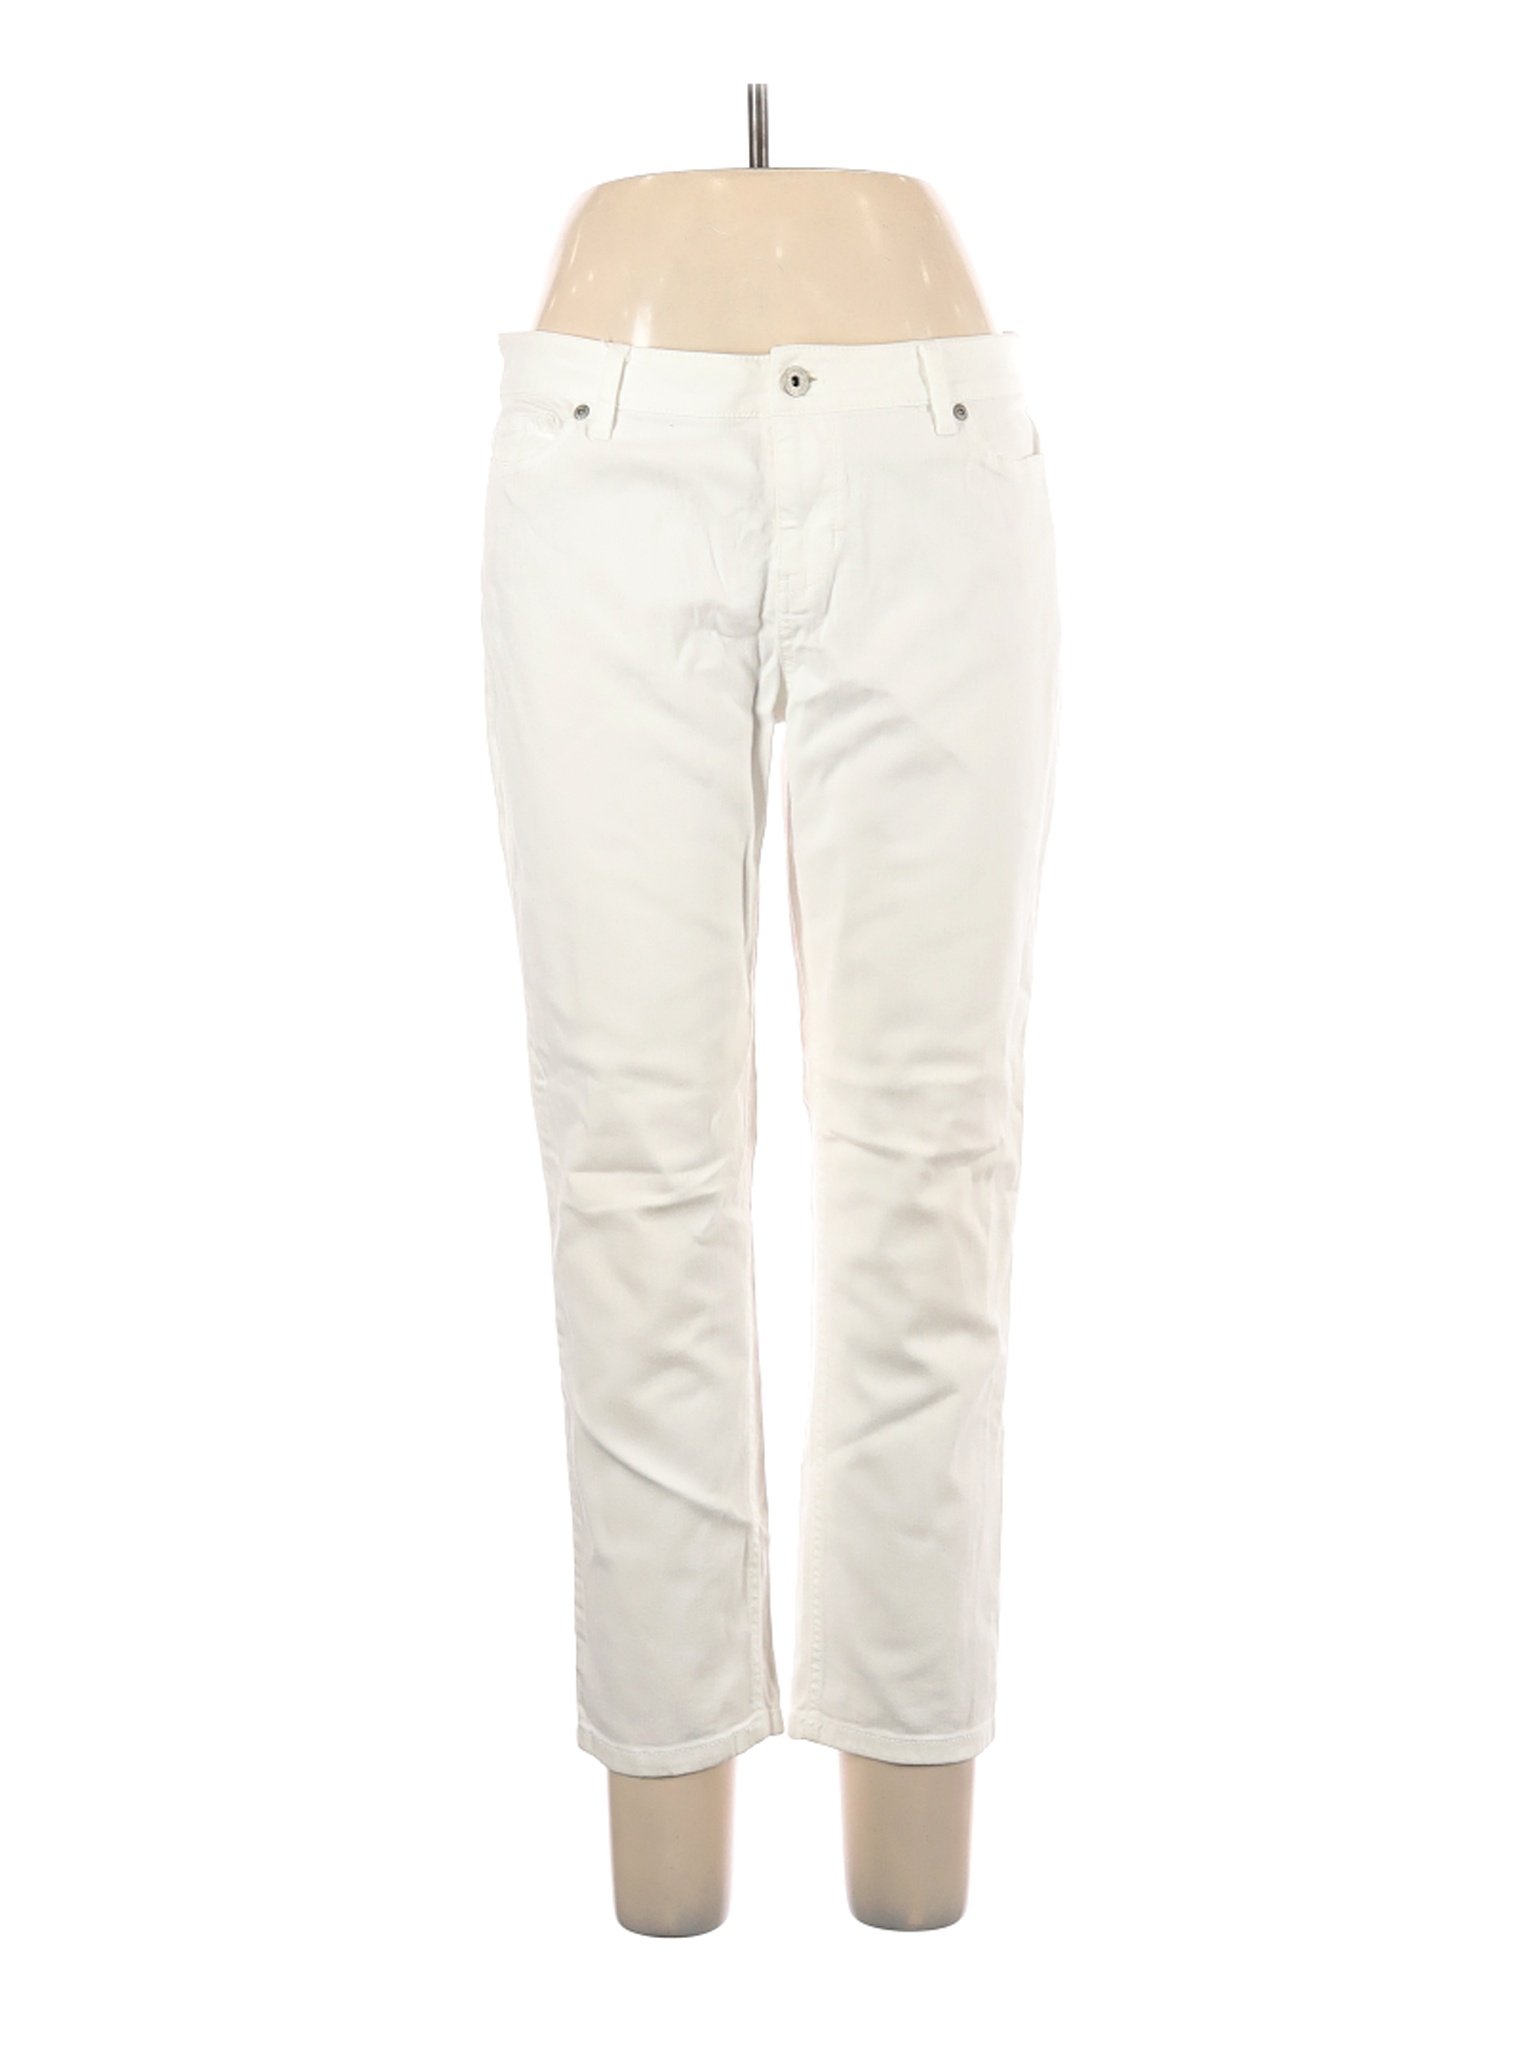 J.Jill Women White Jeans 10 Petites | eBay